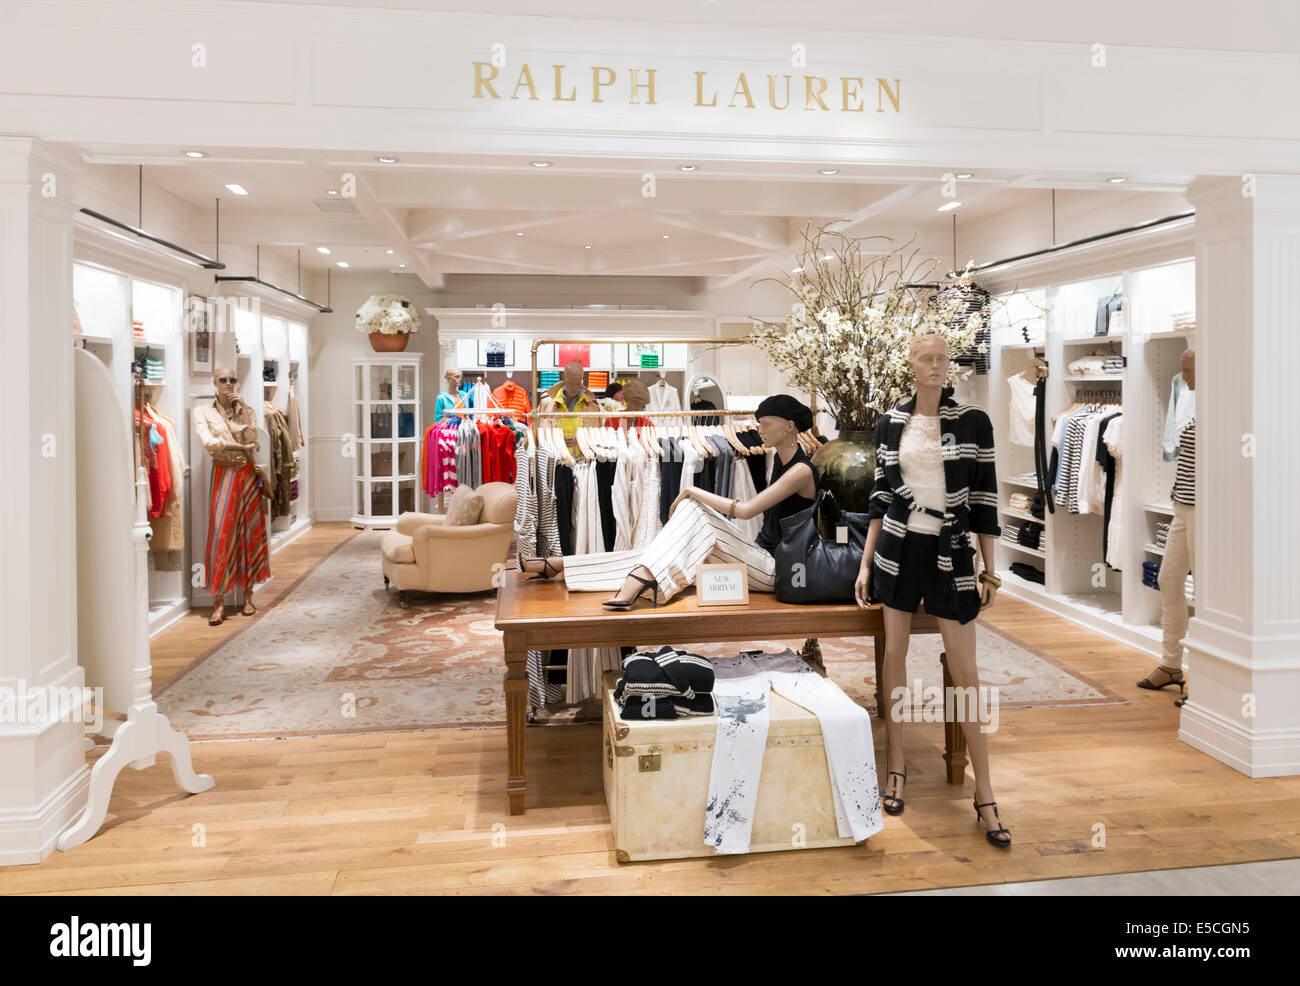 Ralph lauren store interior -Fotos und -Bildmaterial in hoher Auflösung ...